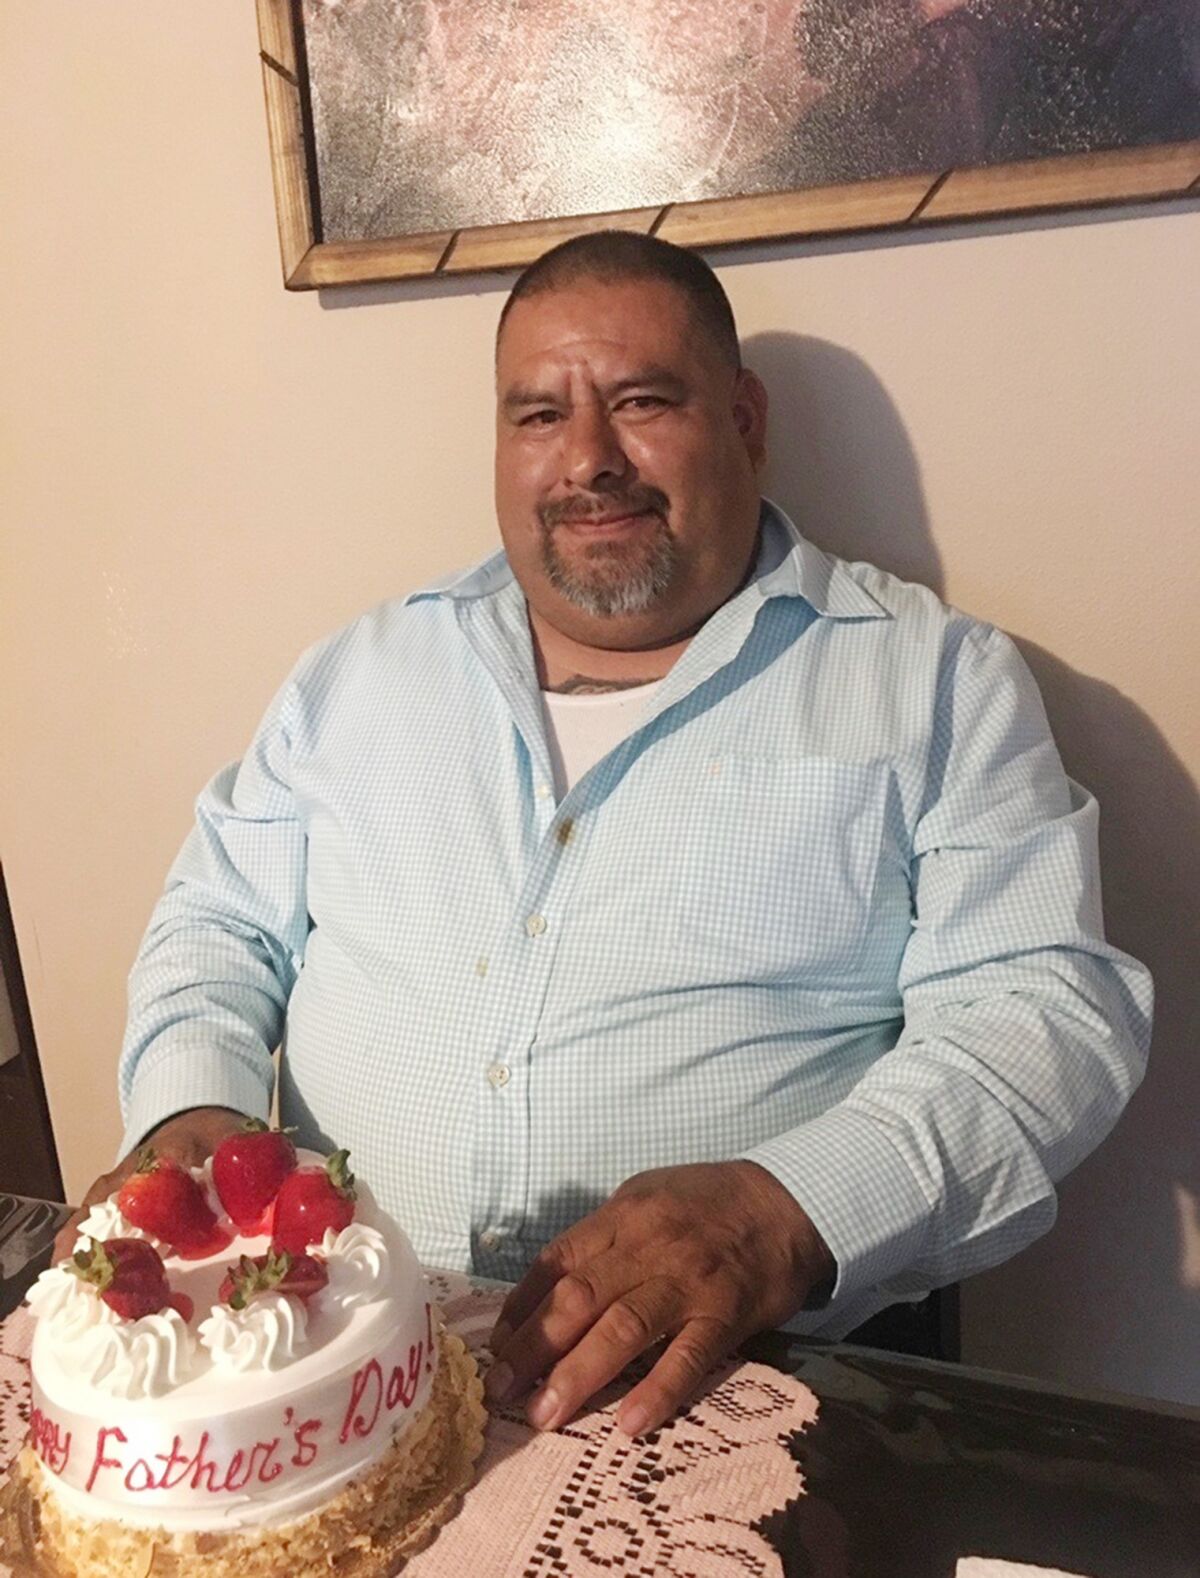 Gaspár Gómez with a Father's Day cake